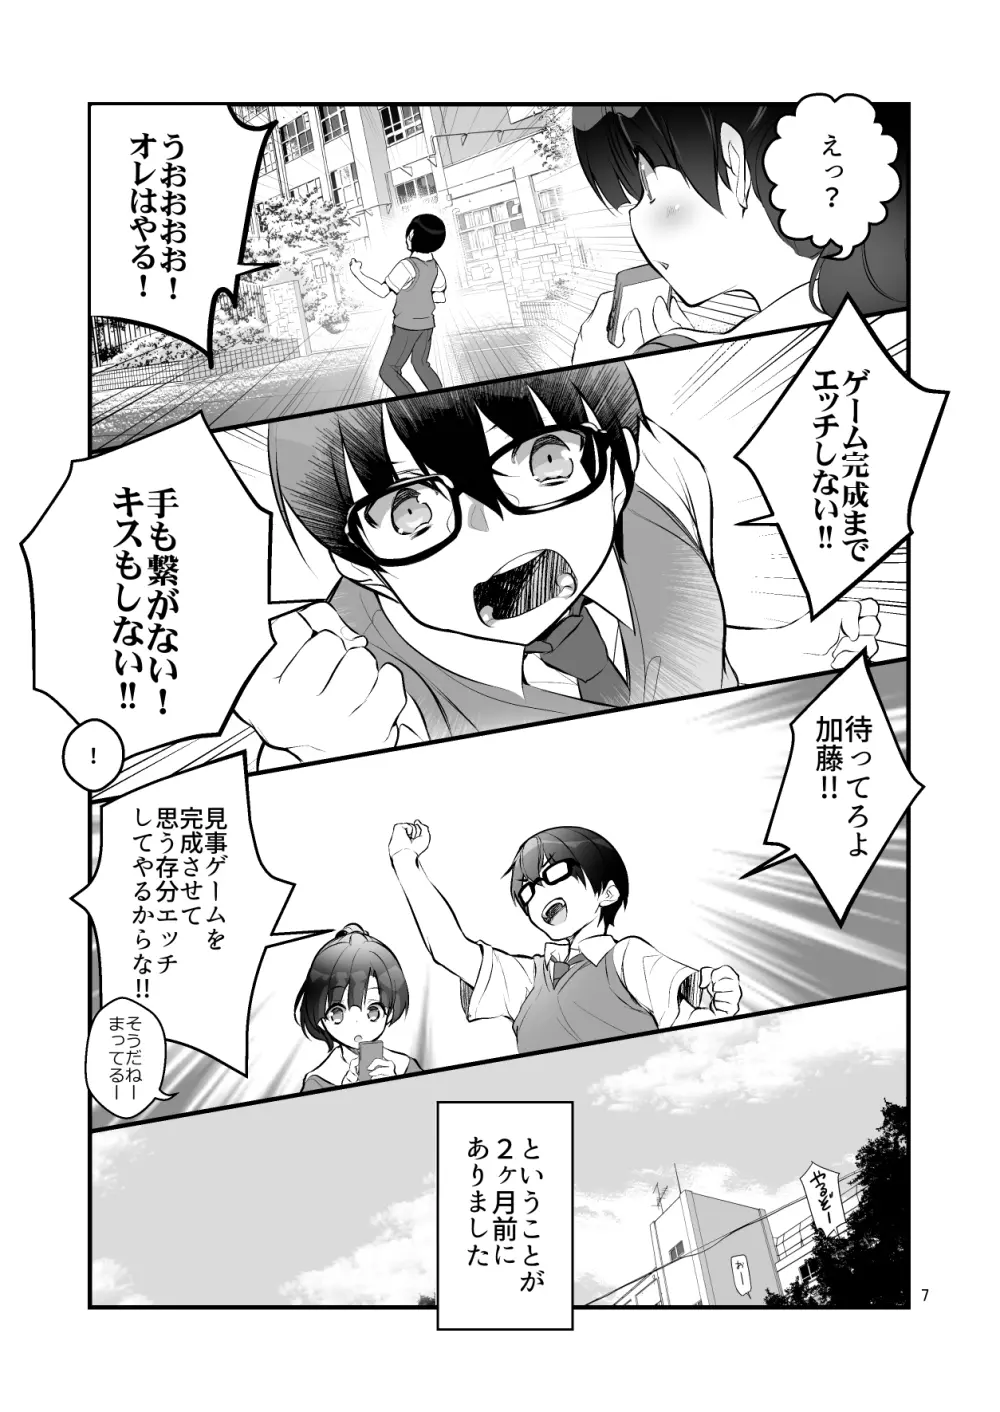 フツカノはヲタカレのメガネをとる。2 7ページ